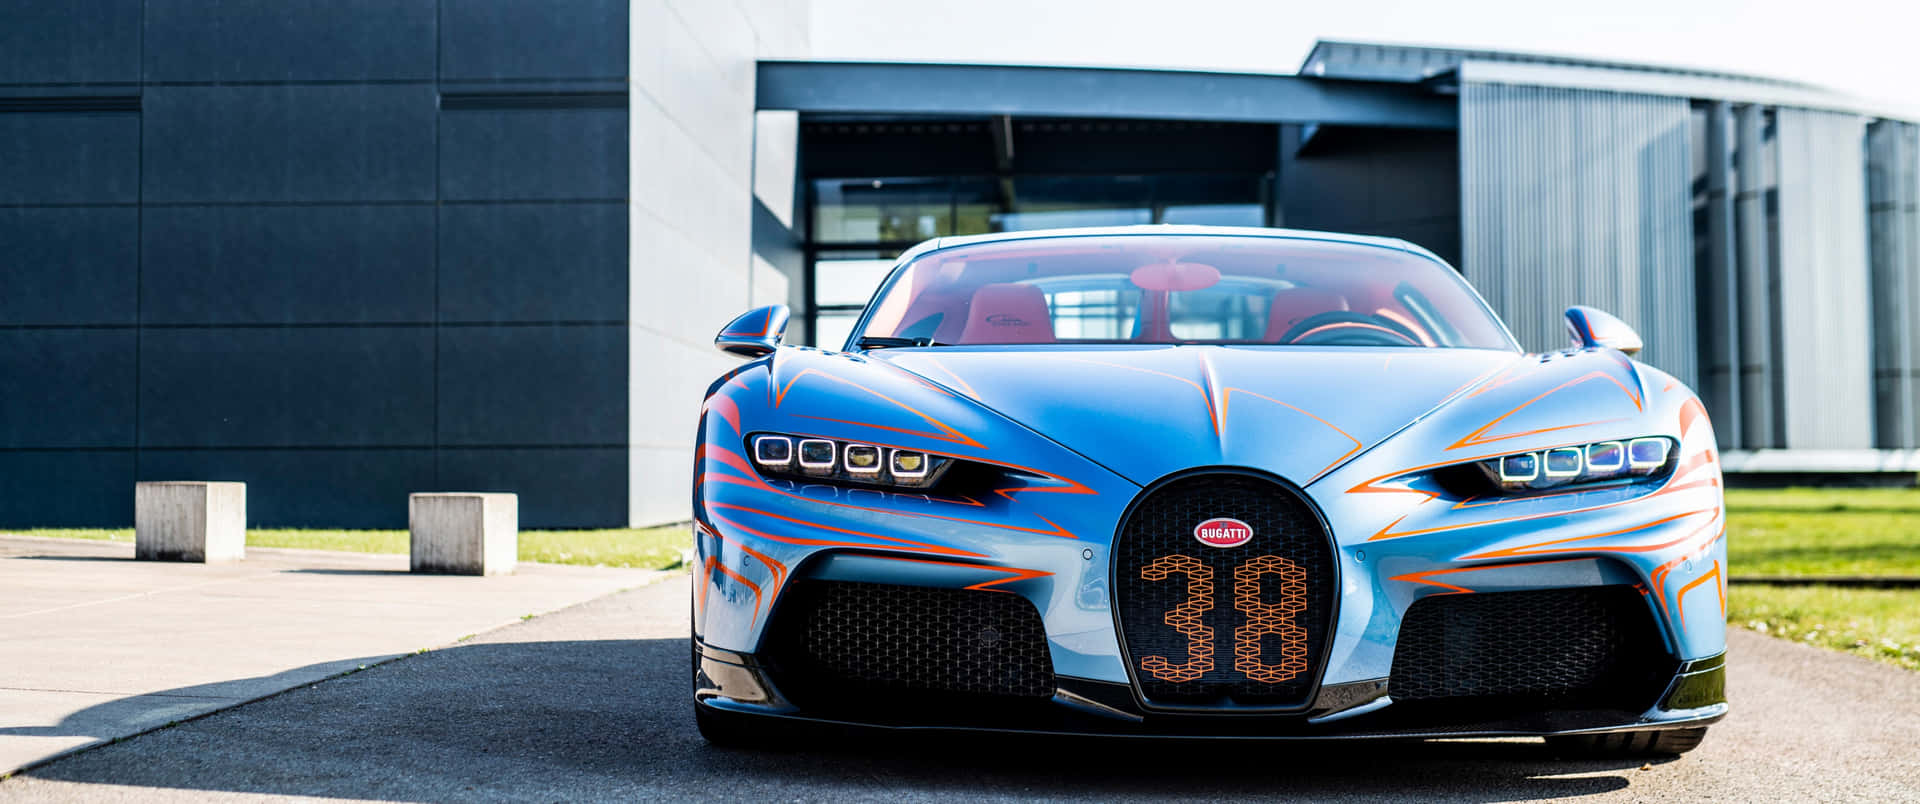 Rasein Die Zukunft Mit Dem Bugatti Auto Wallpaper